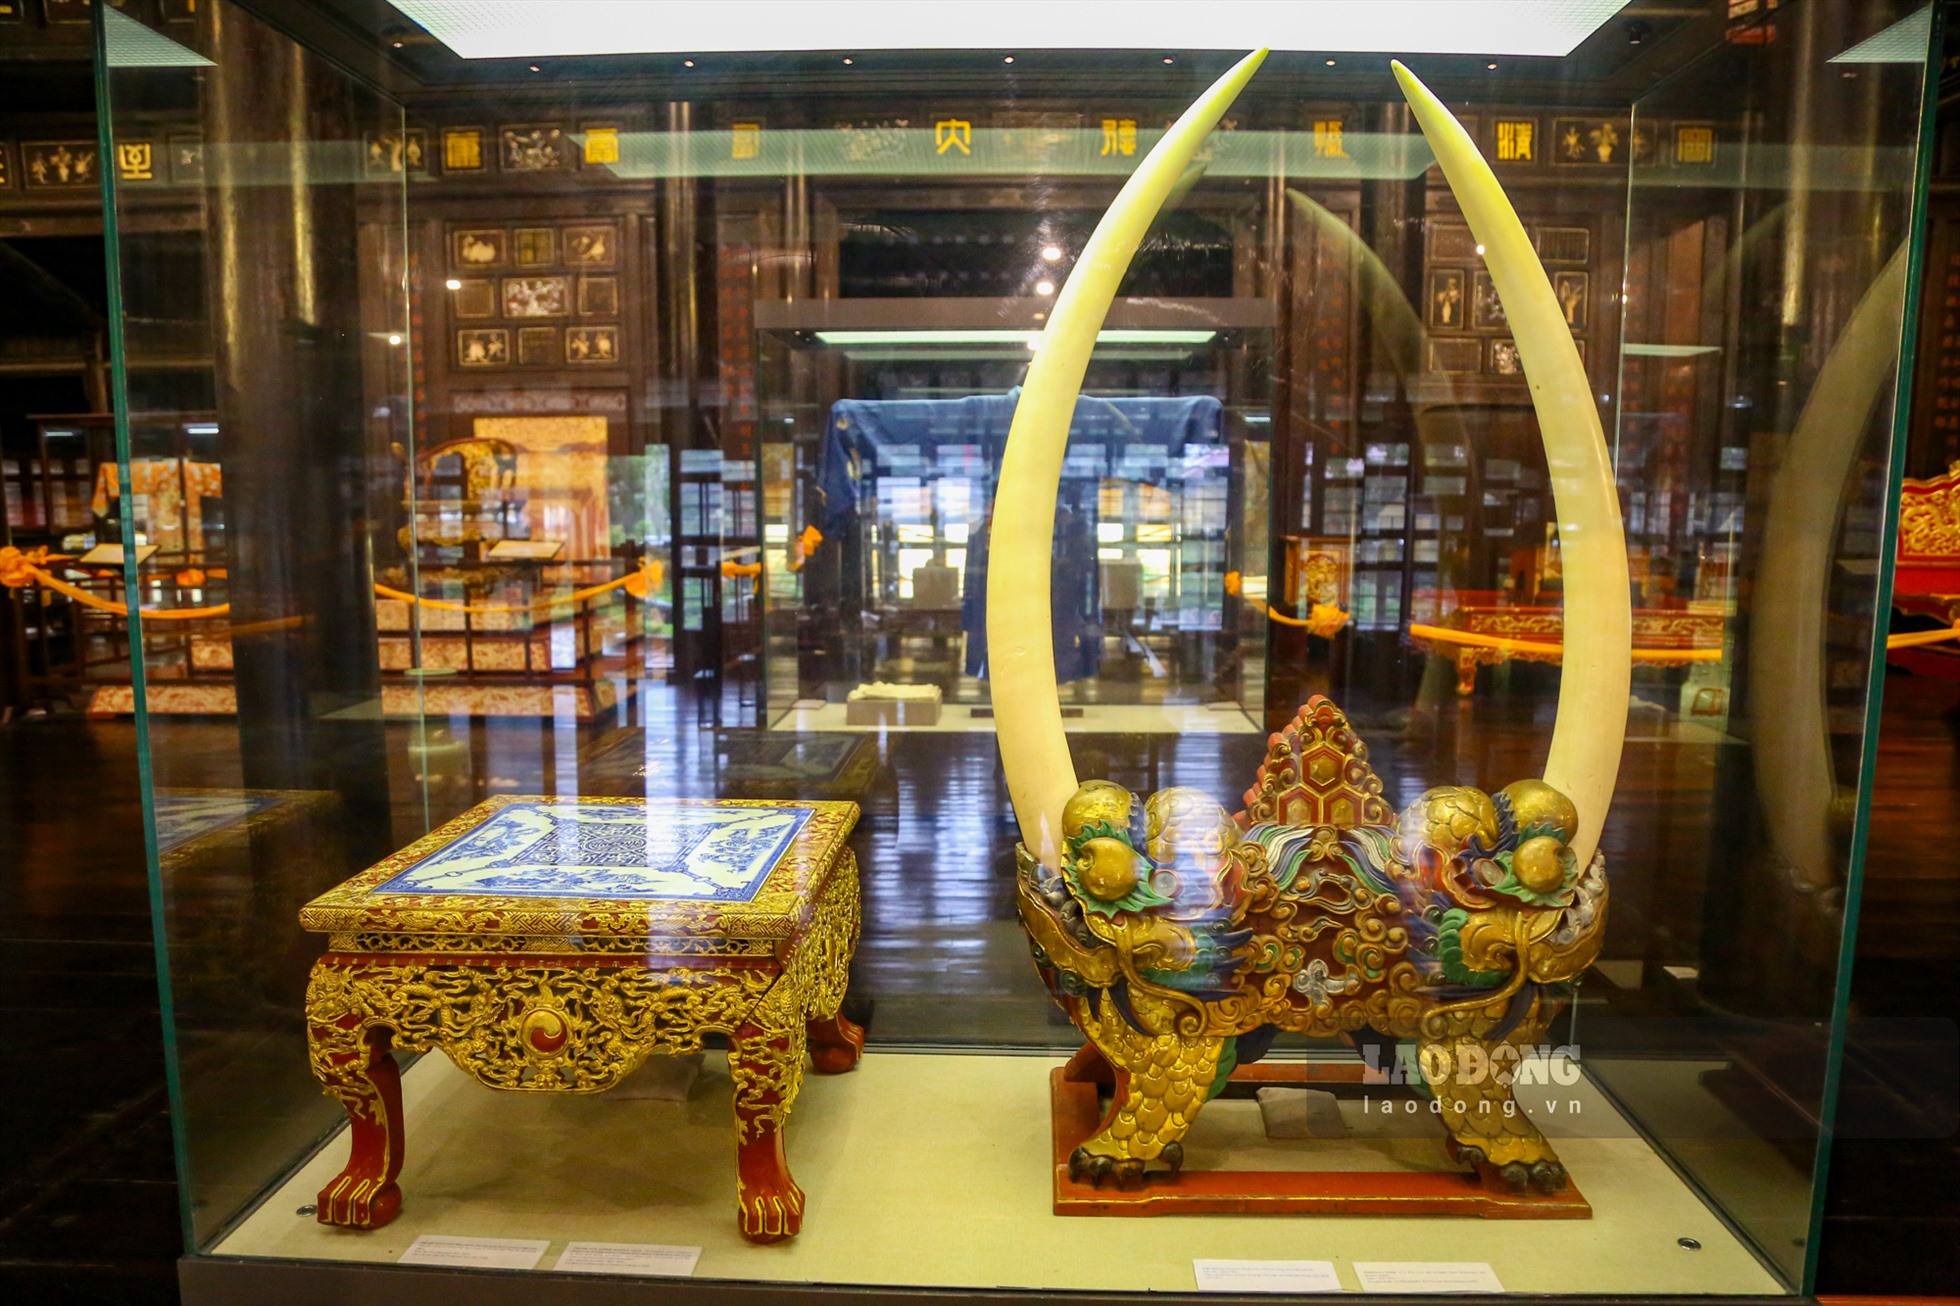 Cặp ngà voi dùng làm vật trang trí trong cung điện của các vua nhà Nguyễn với kích thước dài khoảng 1,2 mét.